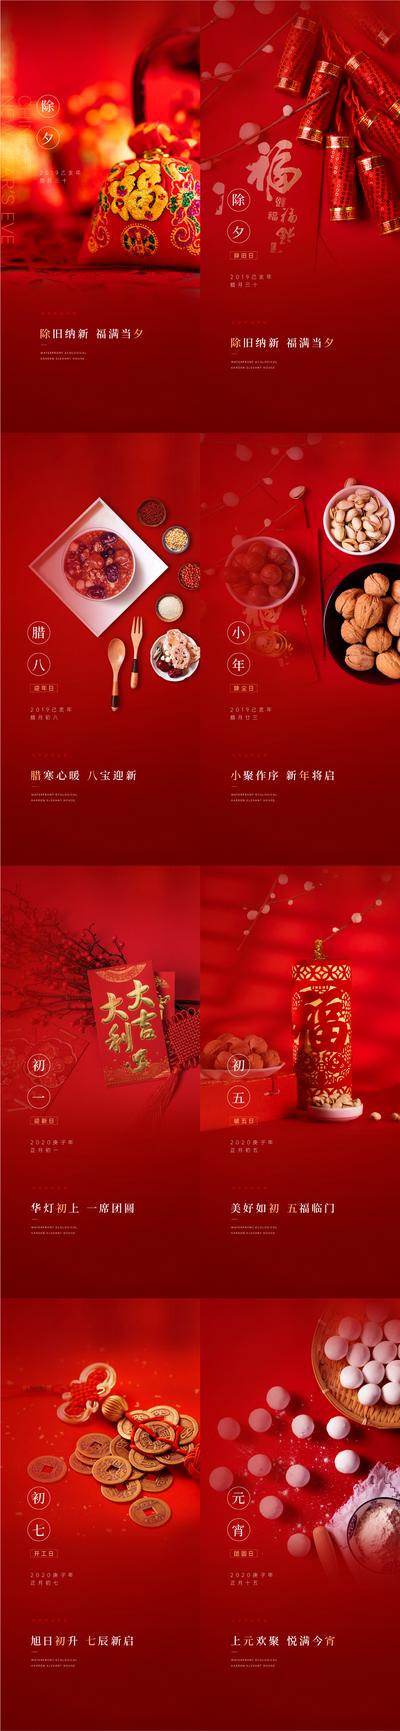 南门网 海报 中国传统节日 房地产 除夕 元宵节 习俗 爆竹 福宝